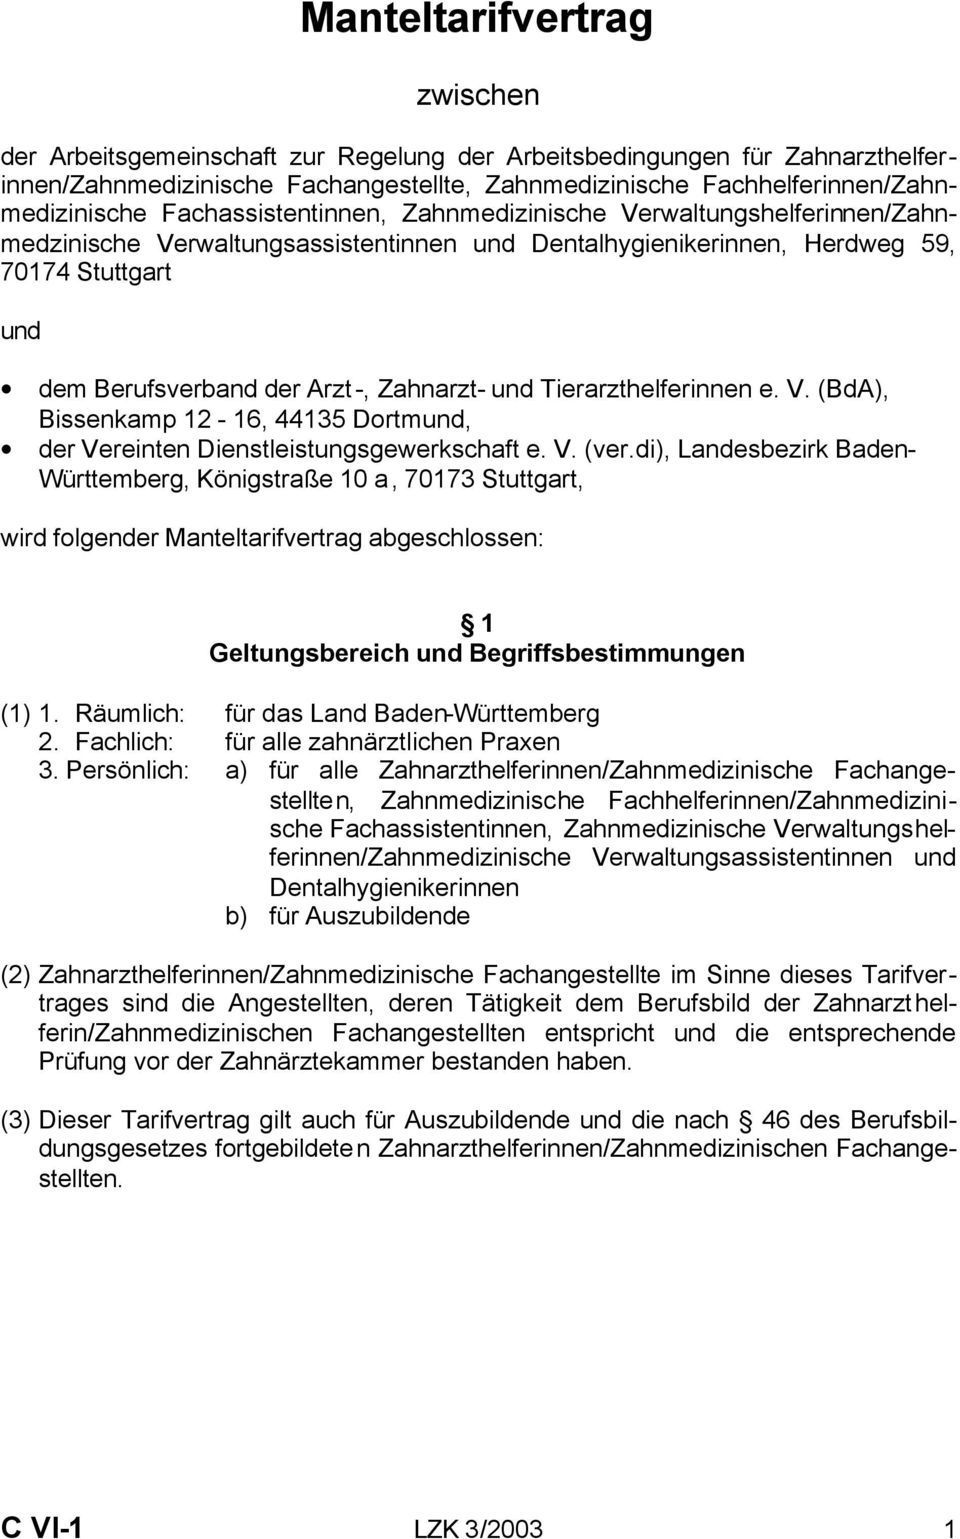 und Tierarzthelferinnen e. V. (BdA), Bissenkamp 12-16, 44135 Dortmund, der Vereinten Dienstleistungsgewerkschaft e. V. (ver.